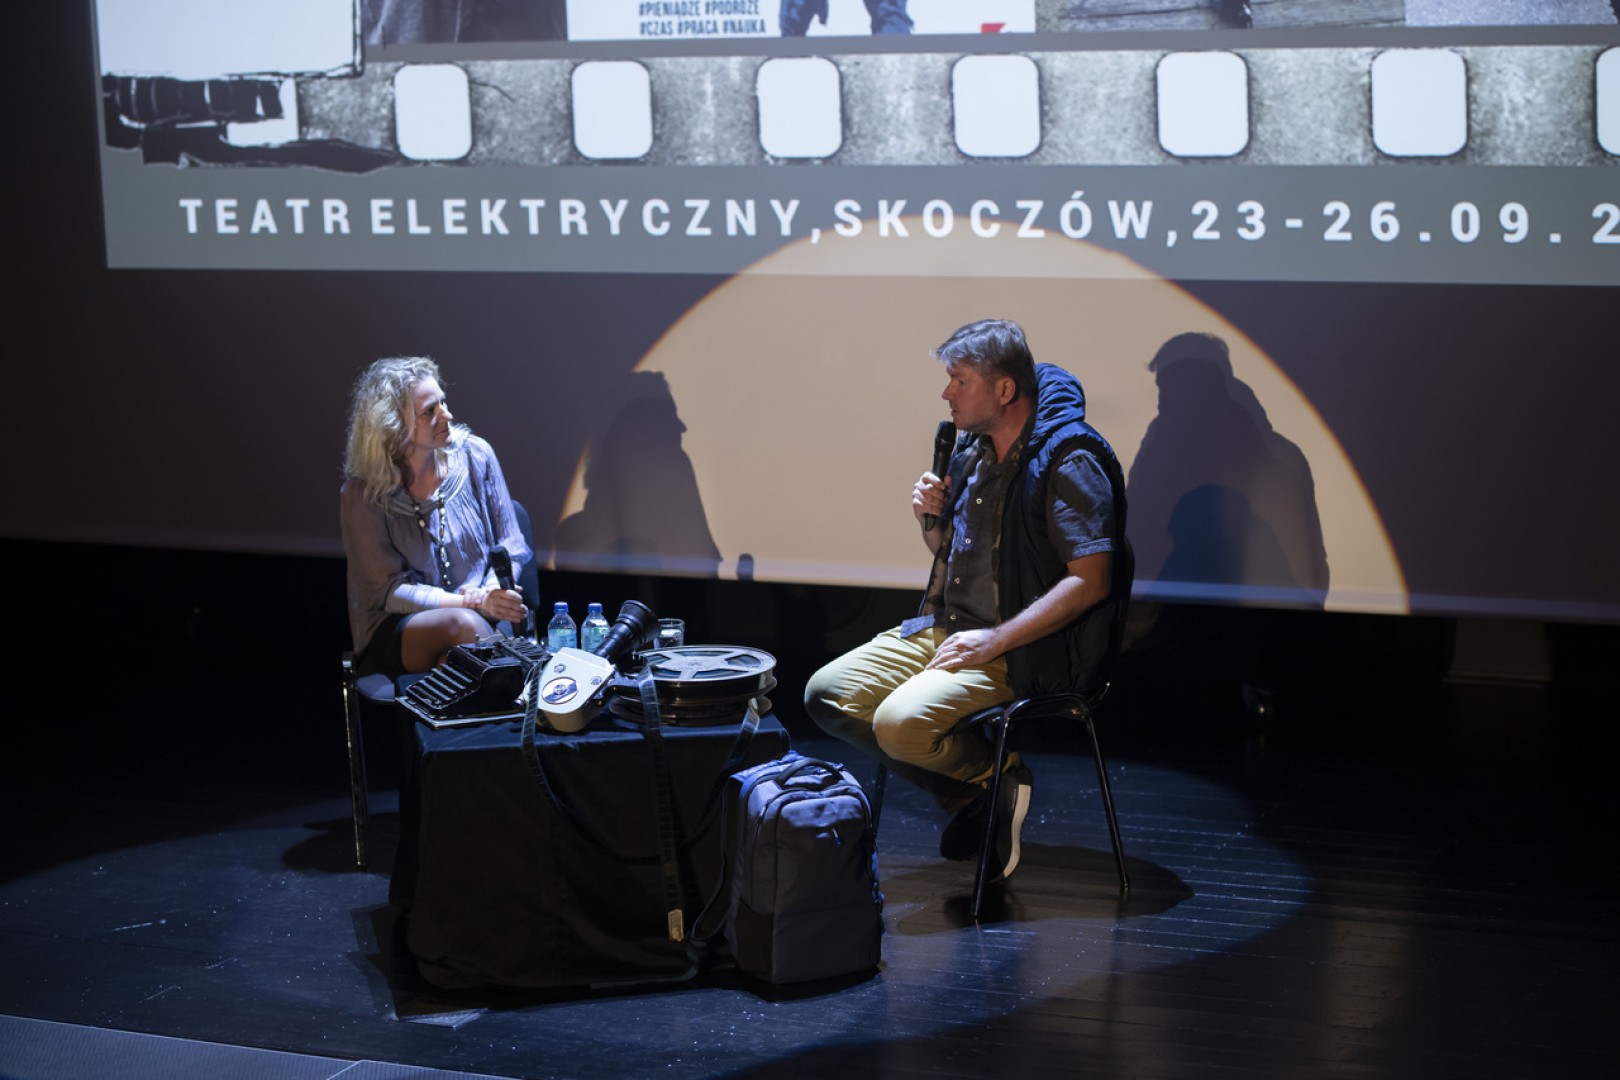 14. Festiwal Filmów Przewrotnych/ 2021.09.23-26, Teatr Elektryczny